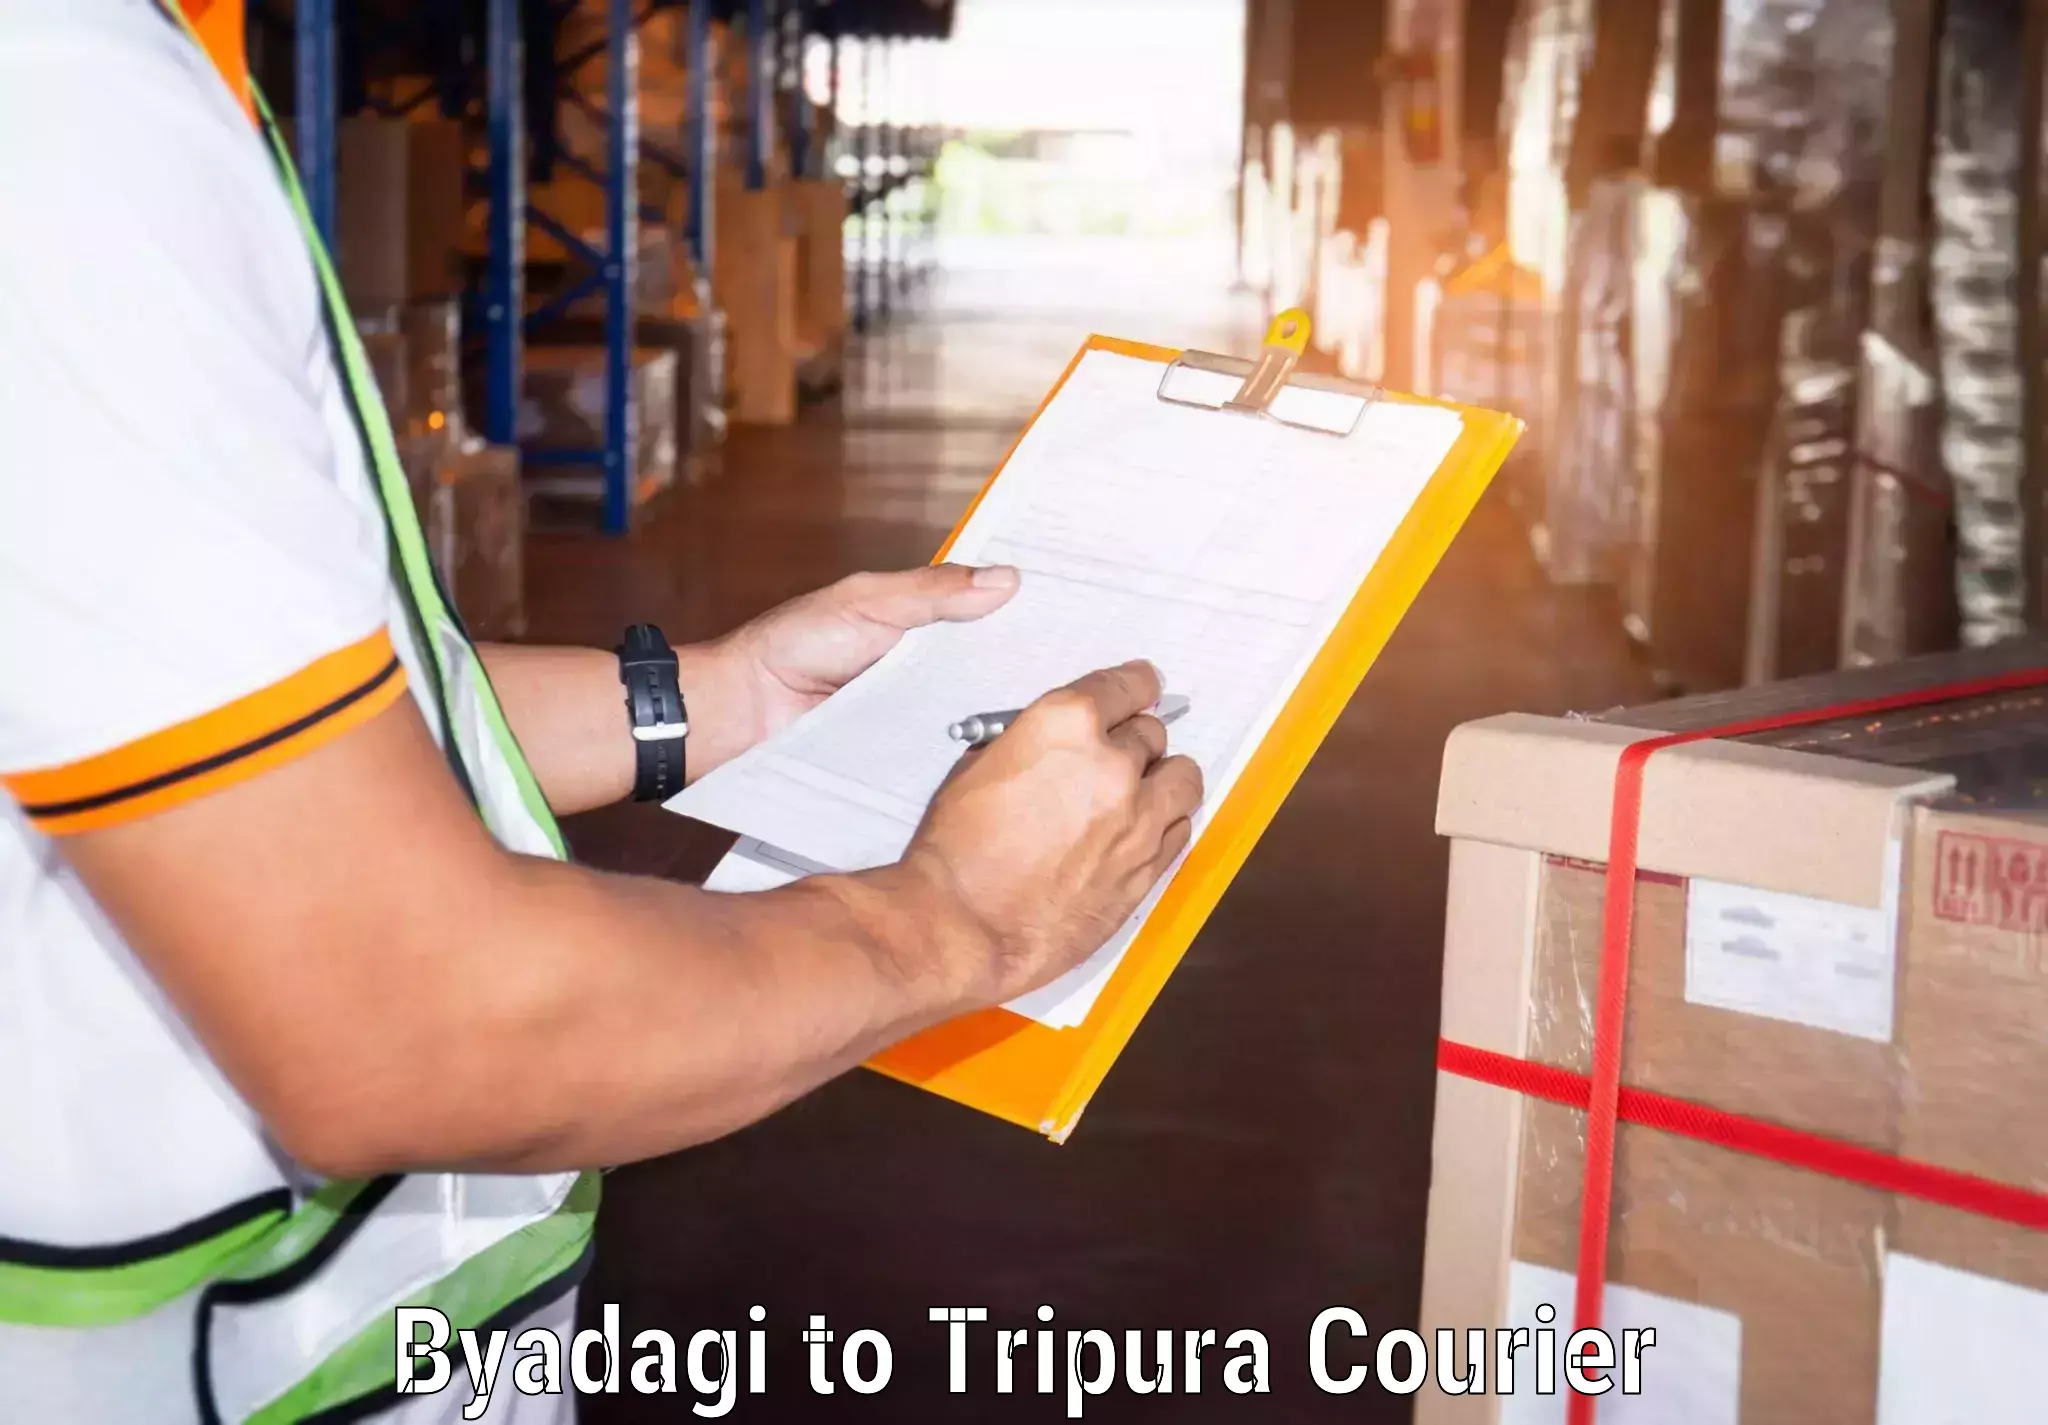 Courier service comparison Byadagi to Tripura